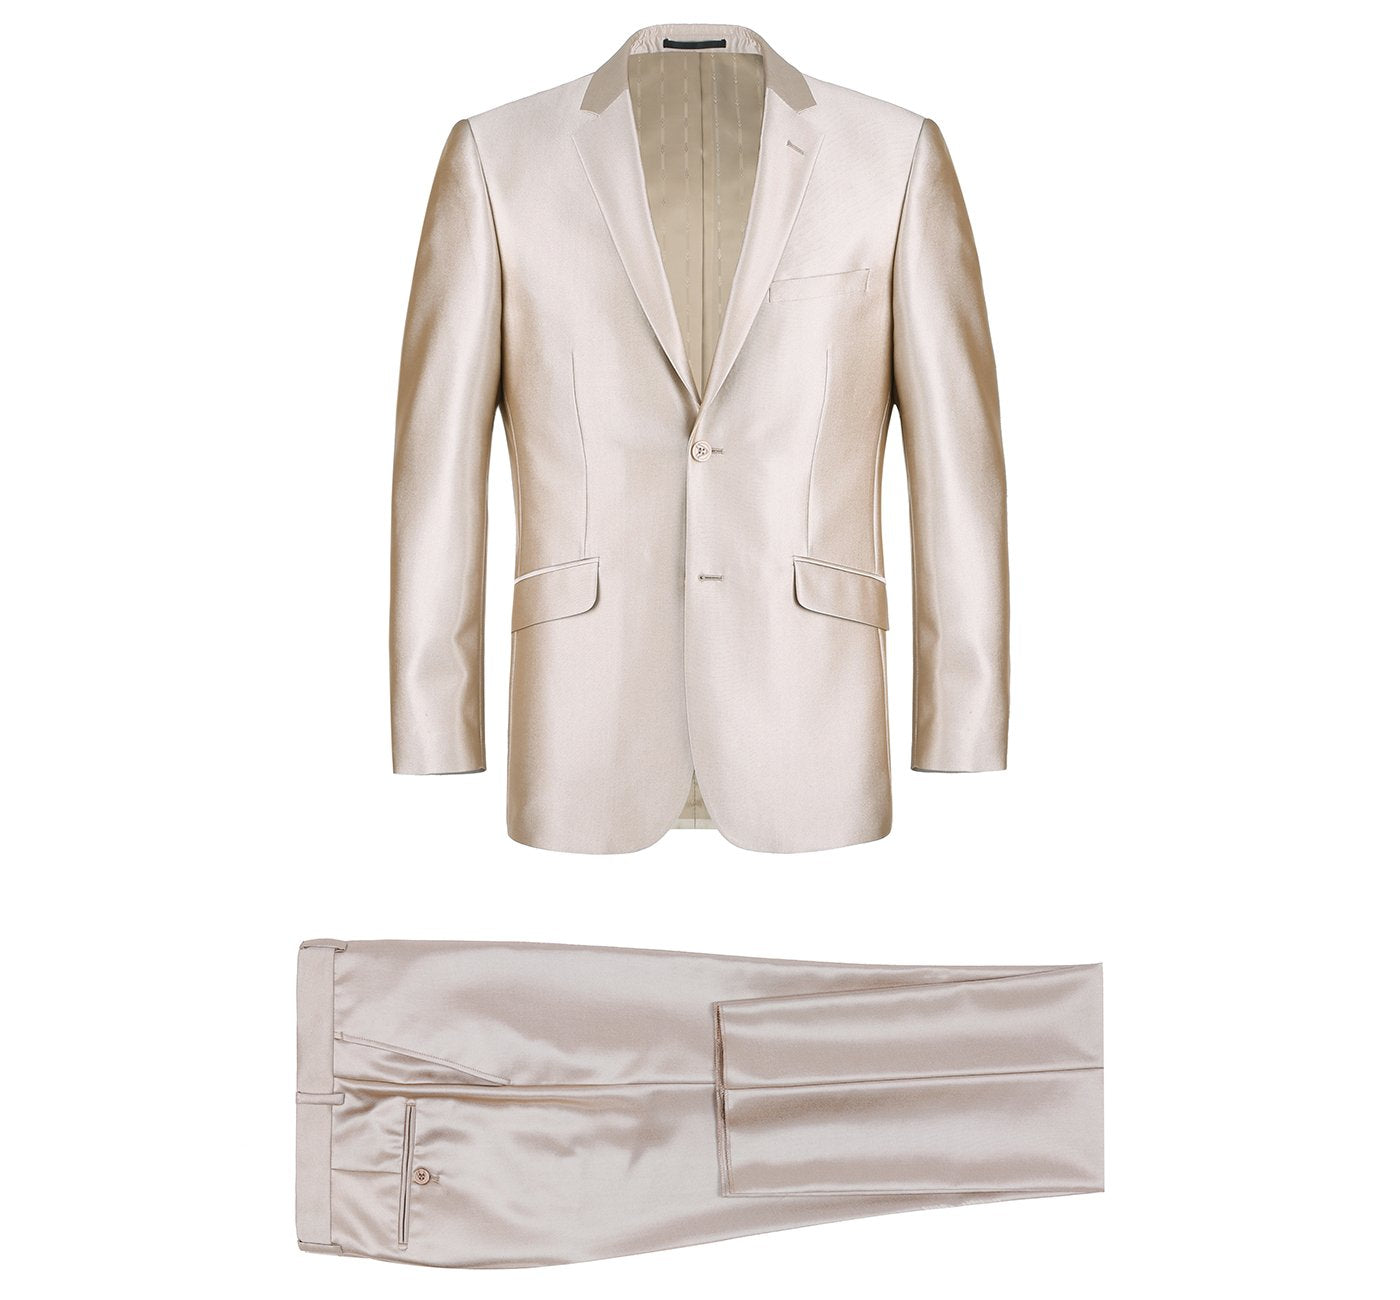 207-3 Men's Beige Sharkskin Italian Styled Two Piece Suit